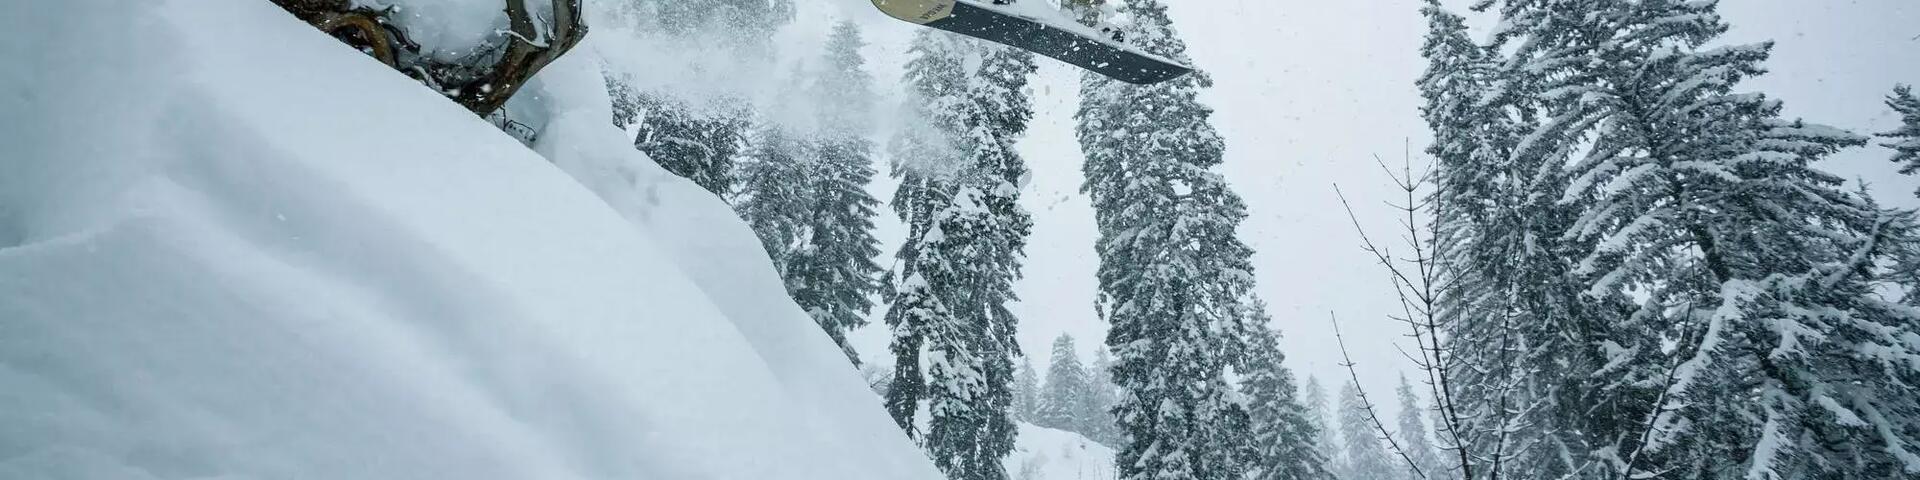 mężczyzna skaczący na desce snowboardowej